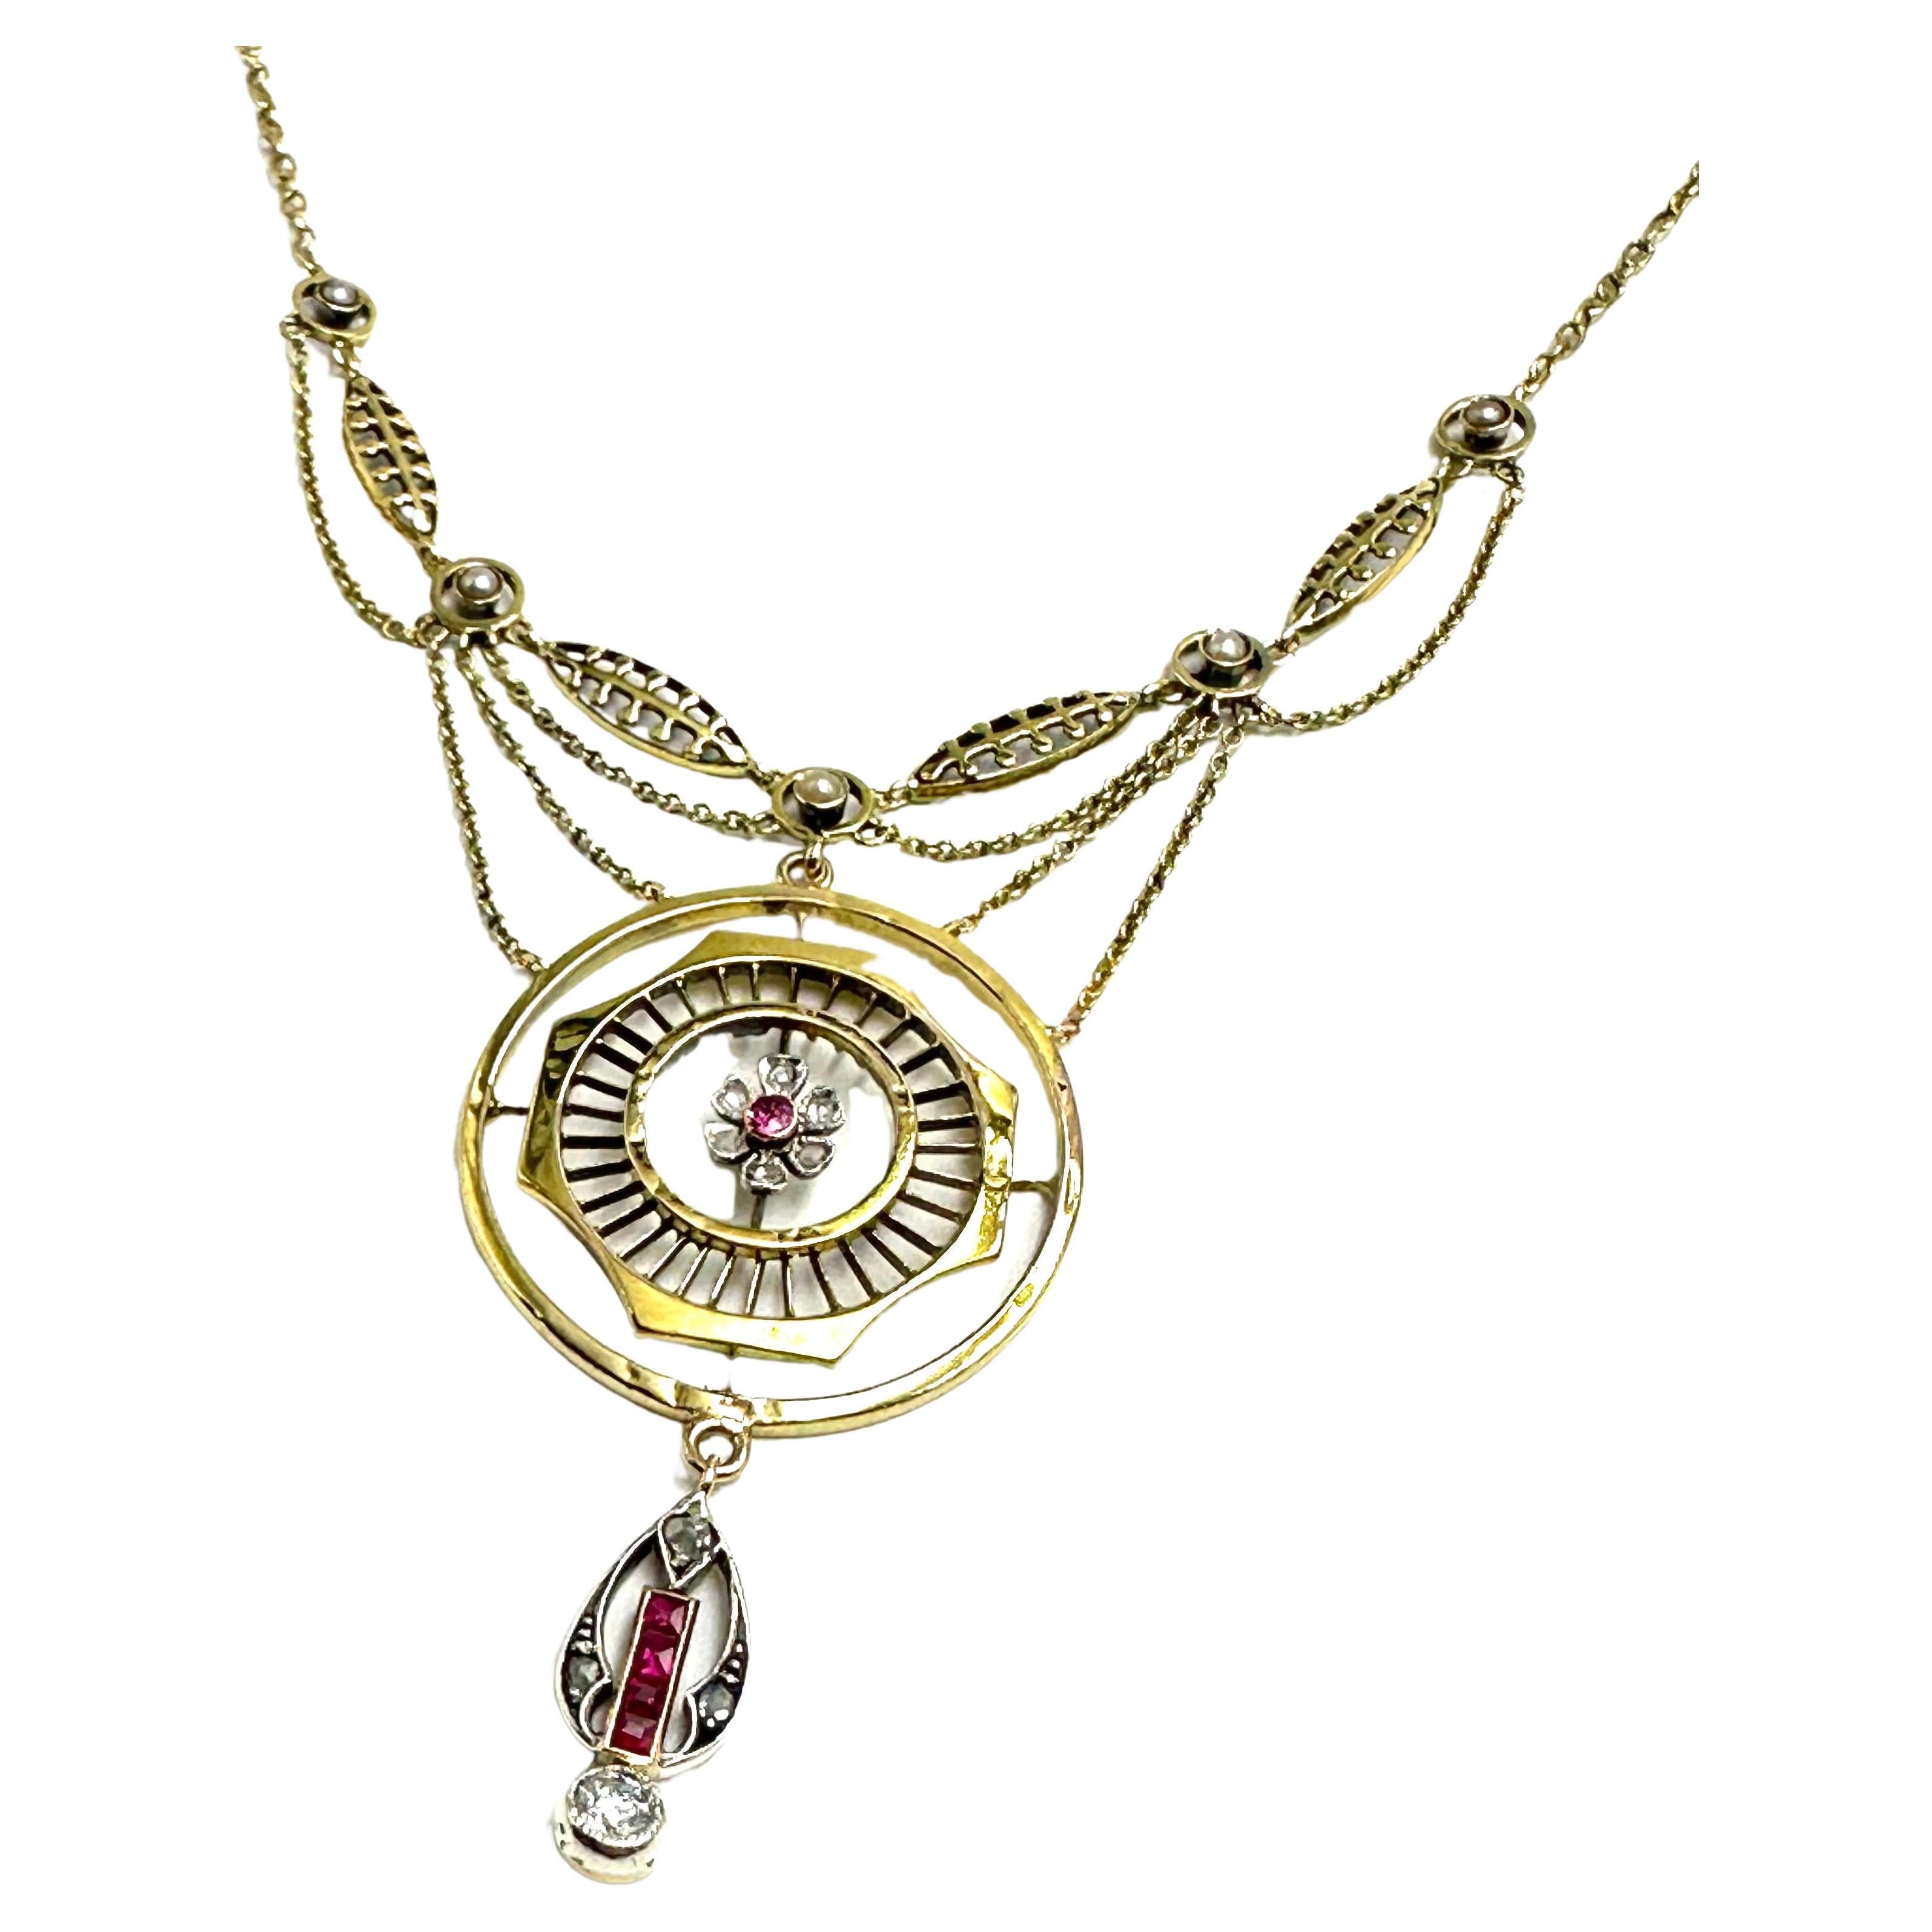 Raro Collier Jugendstil in Oro, mit Diamanten und Rubinen